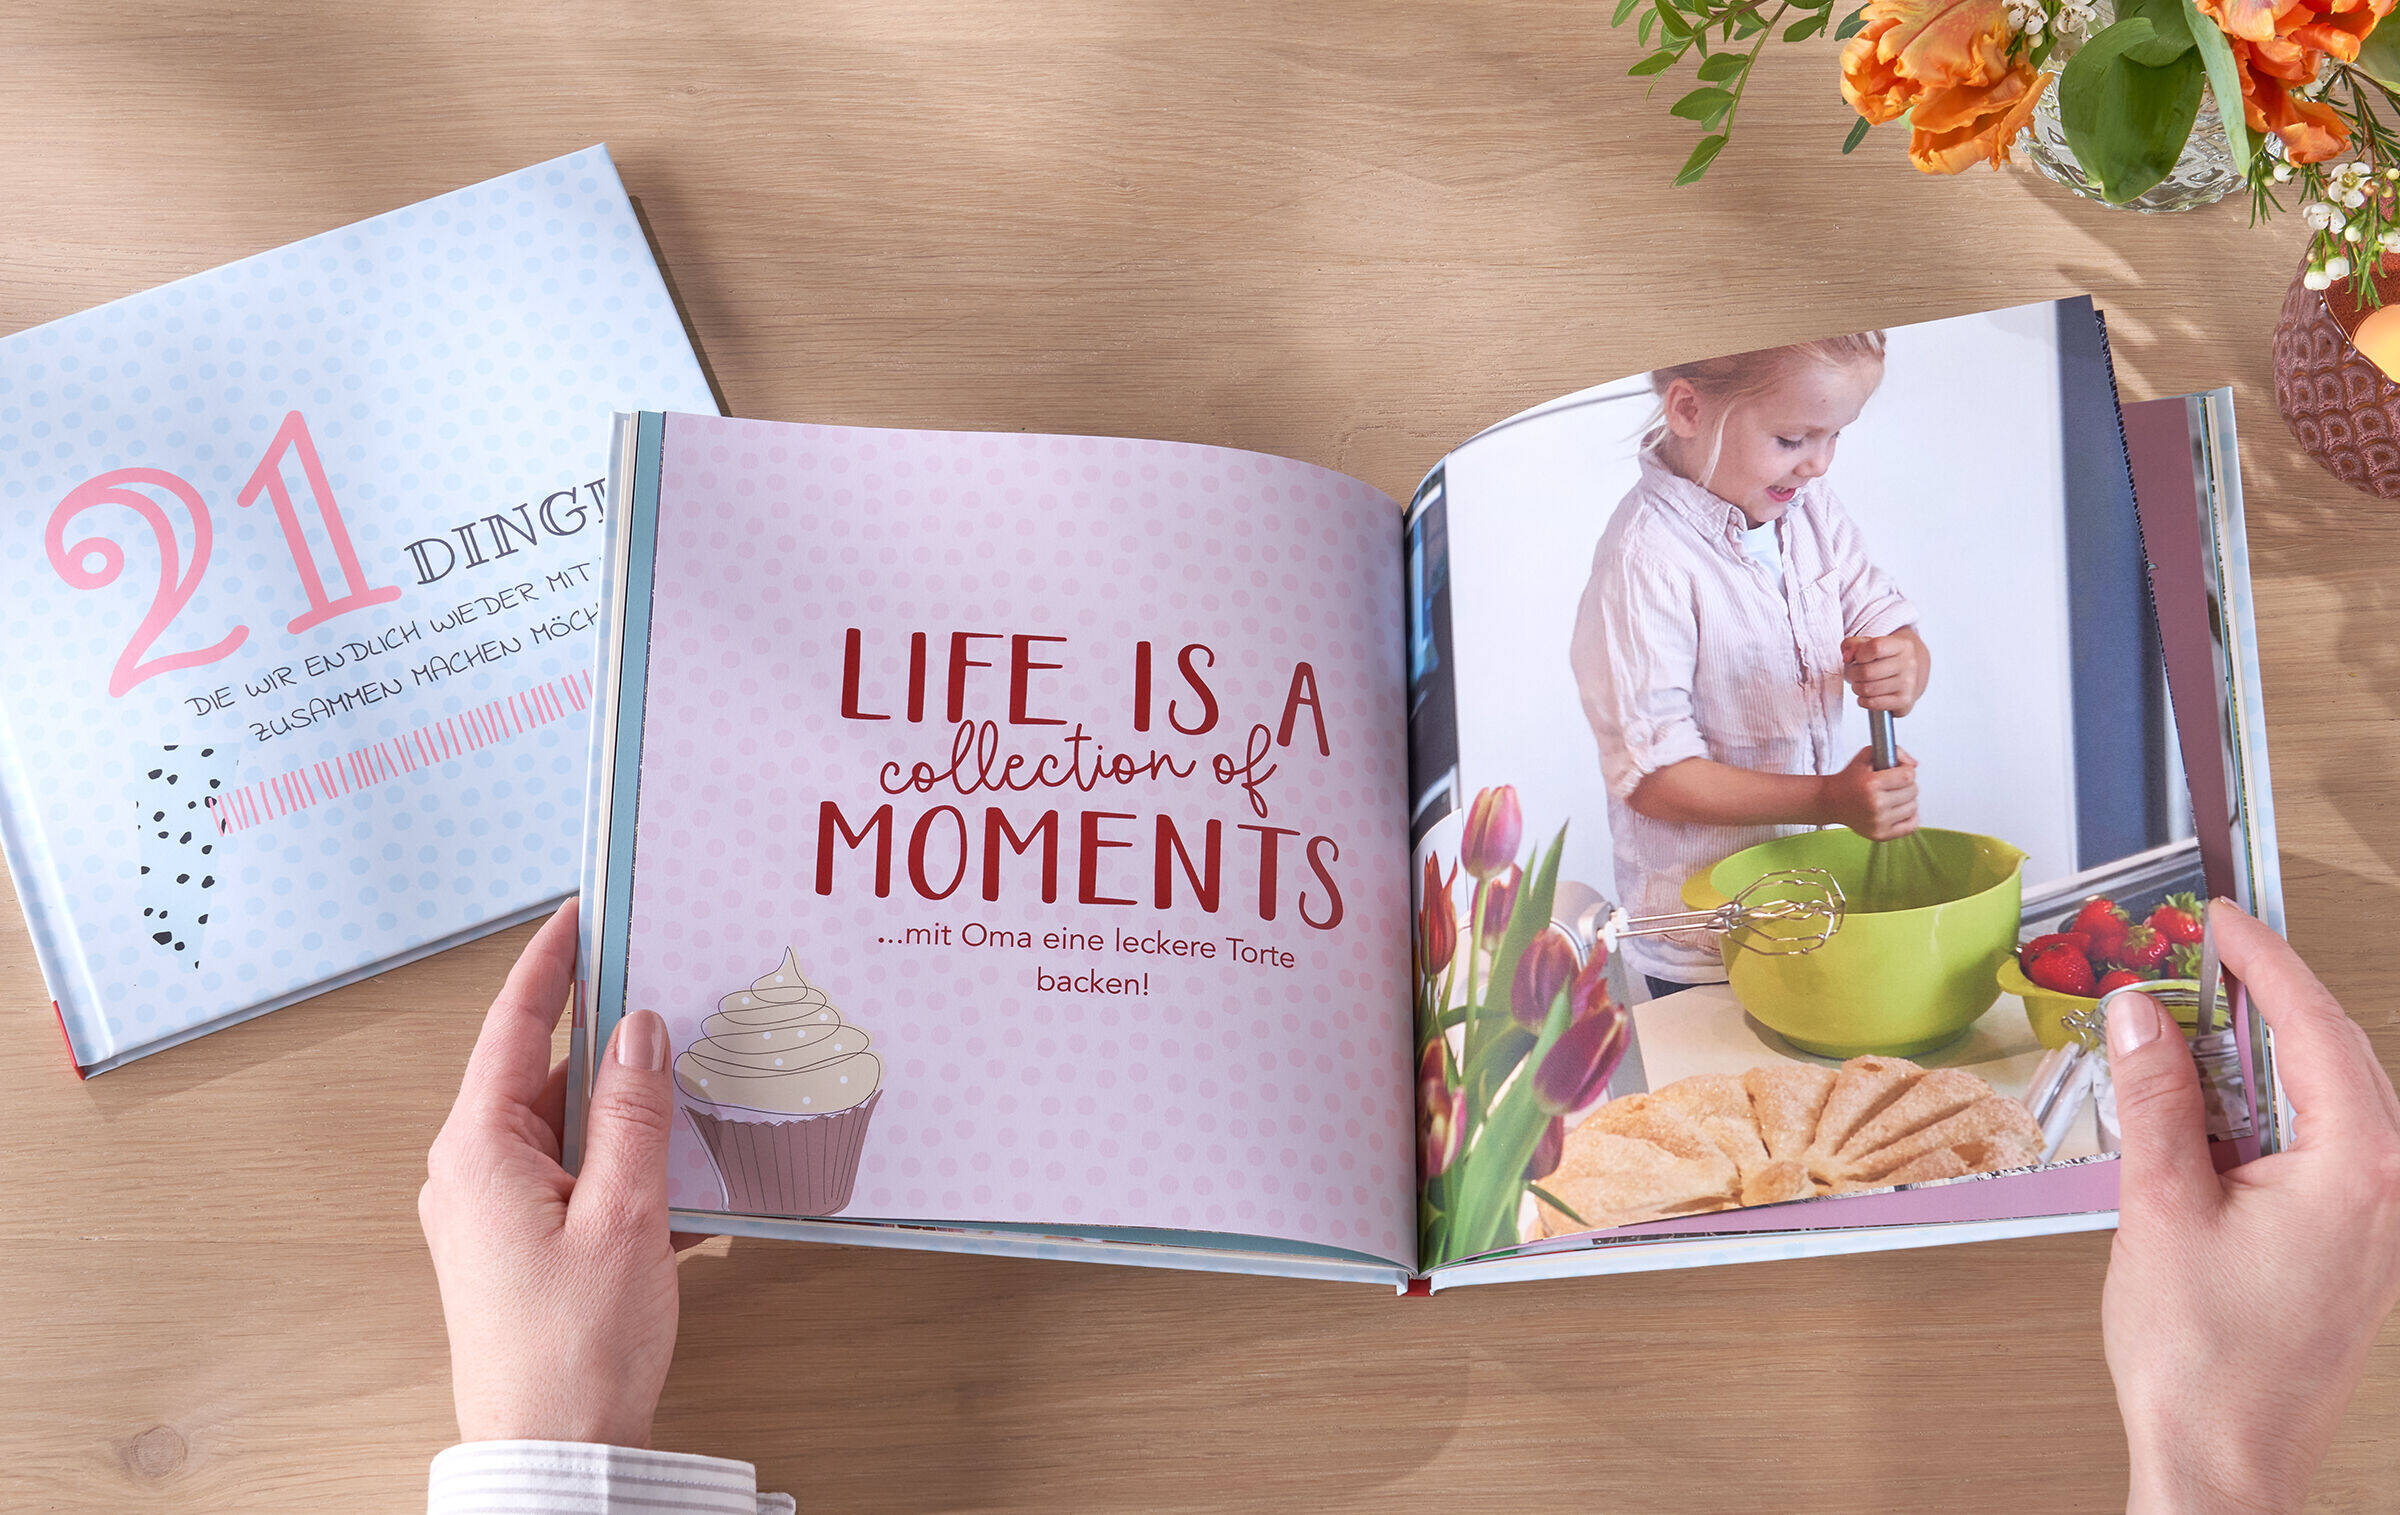 CEWE FOTOBUCH liegt aufgeklappt auf Tisch. Links steht „Life is a collection of moments“, auf der rechten Seite ist das Foto eines Kindes beim Teig rühren zu sehen.